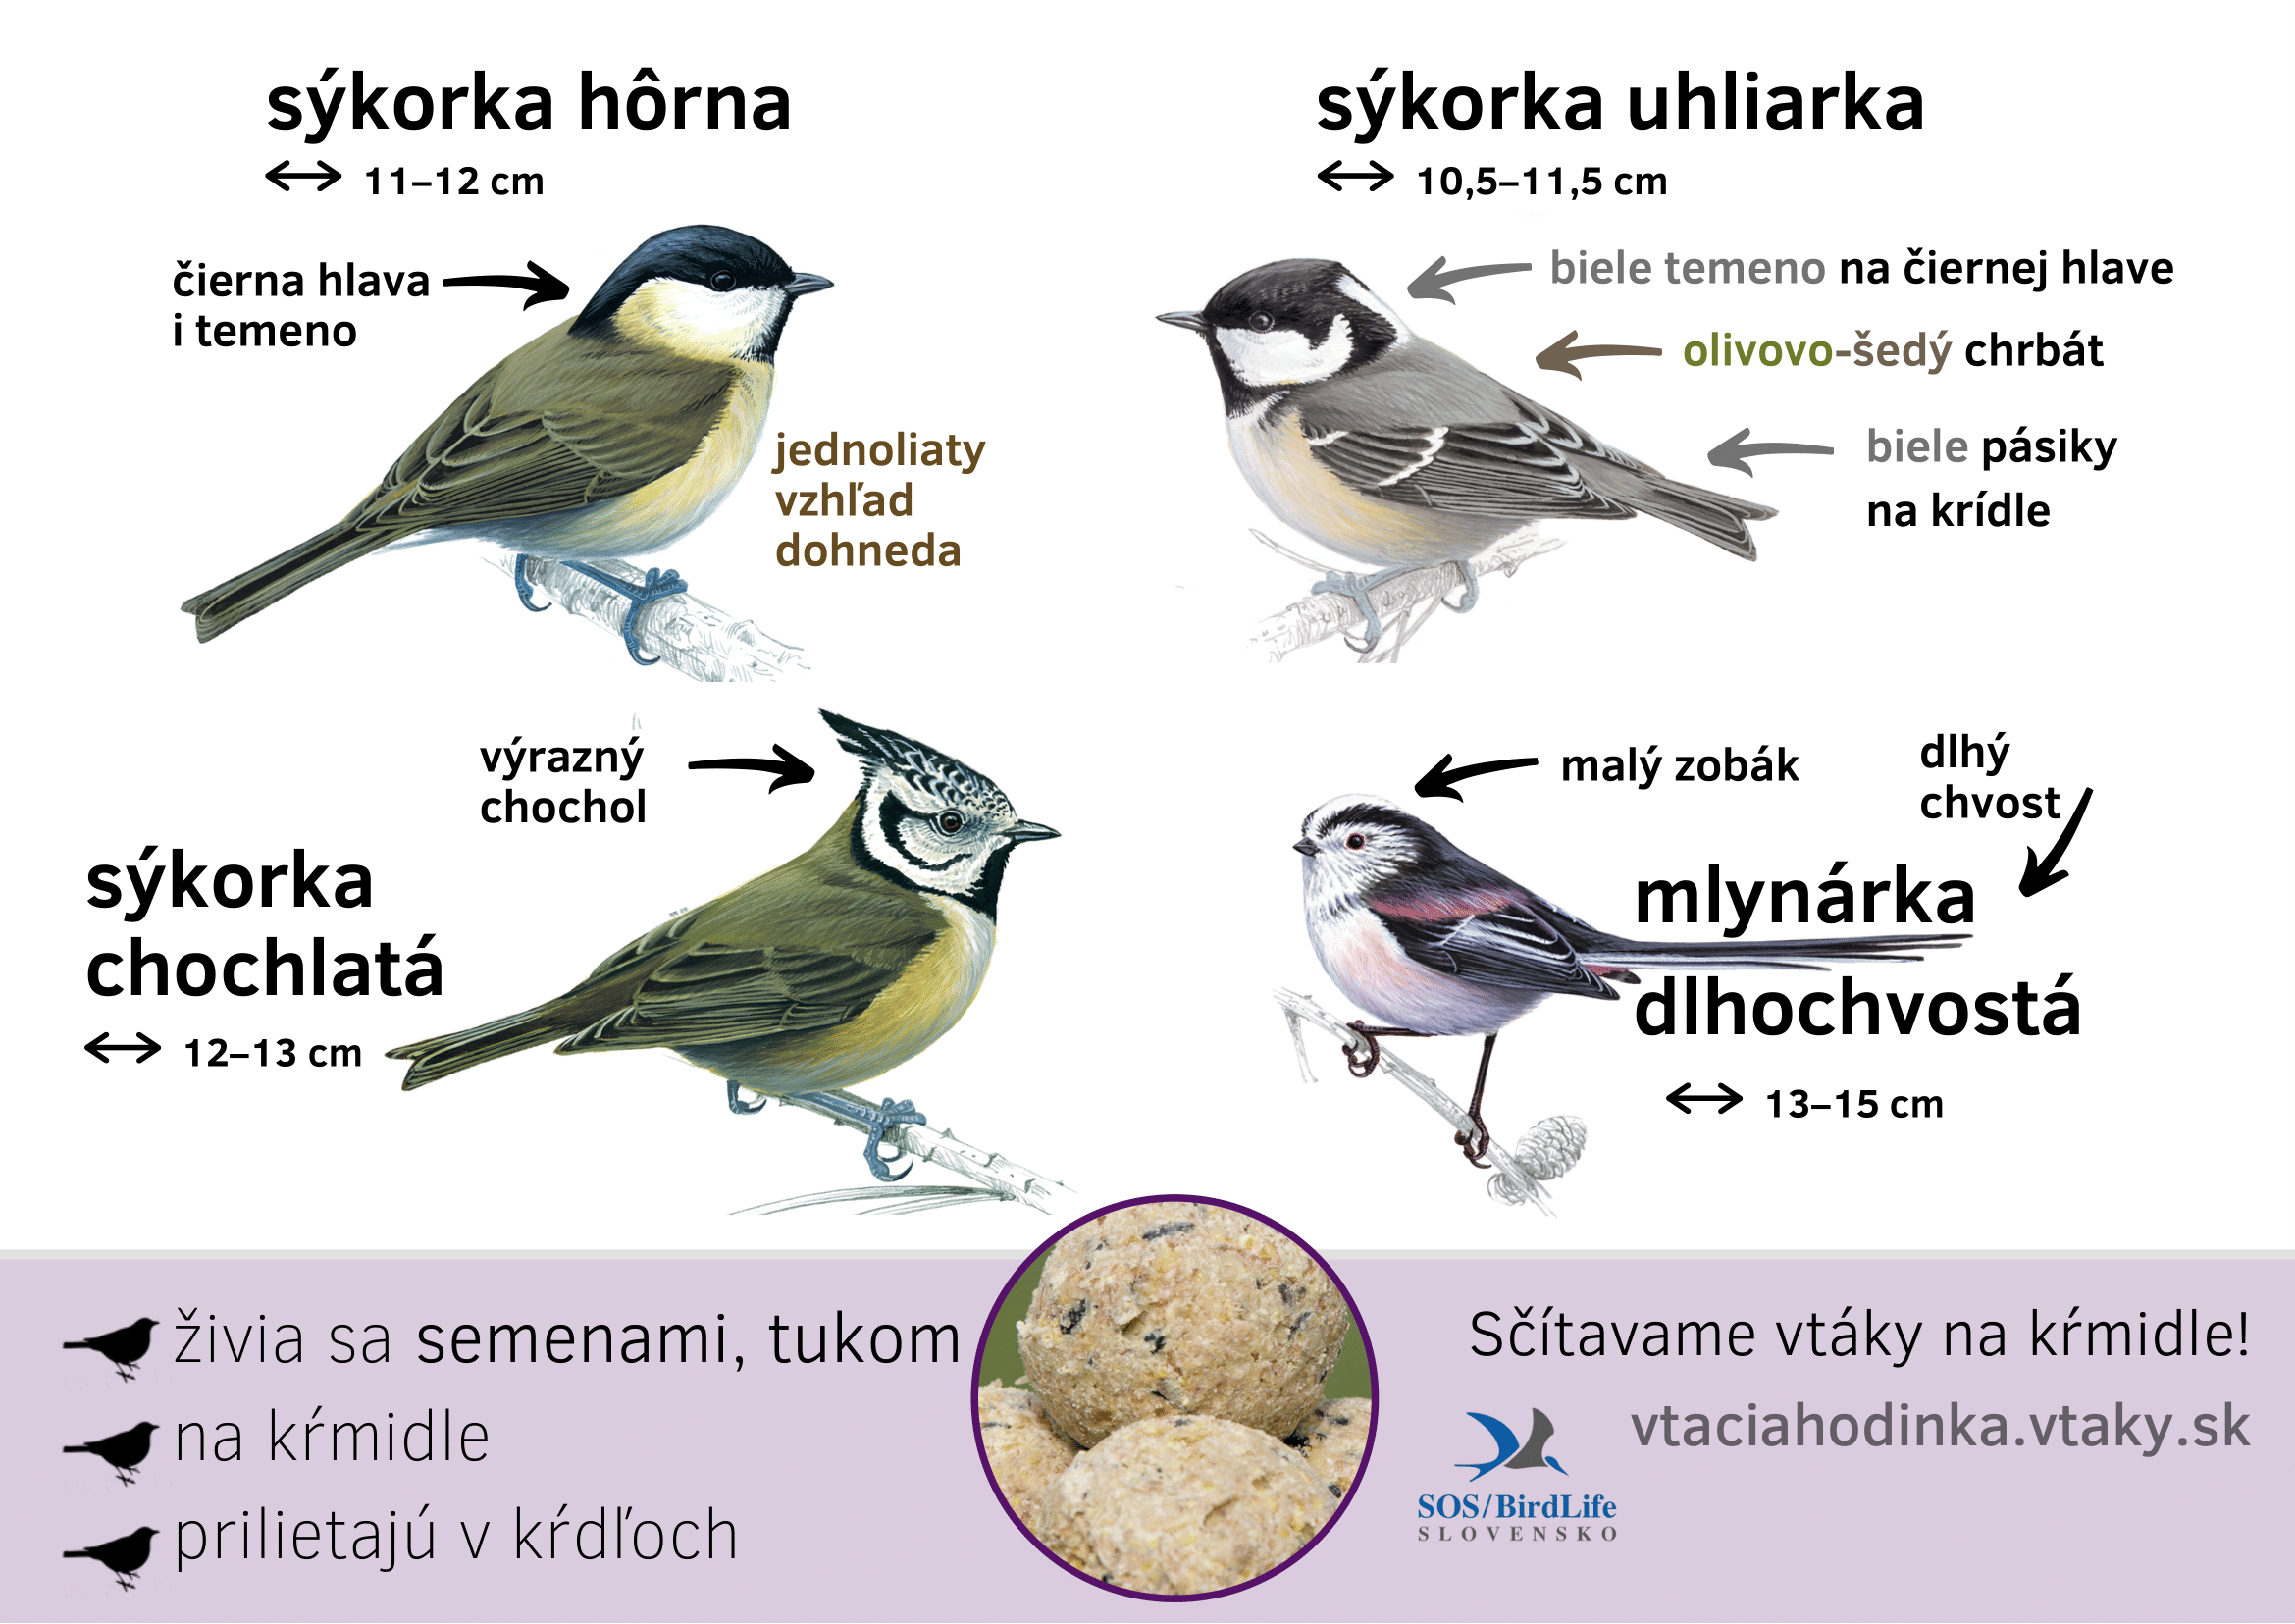 sykorky_horna_uhliarka-1